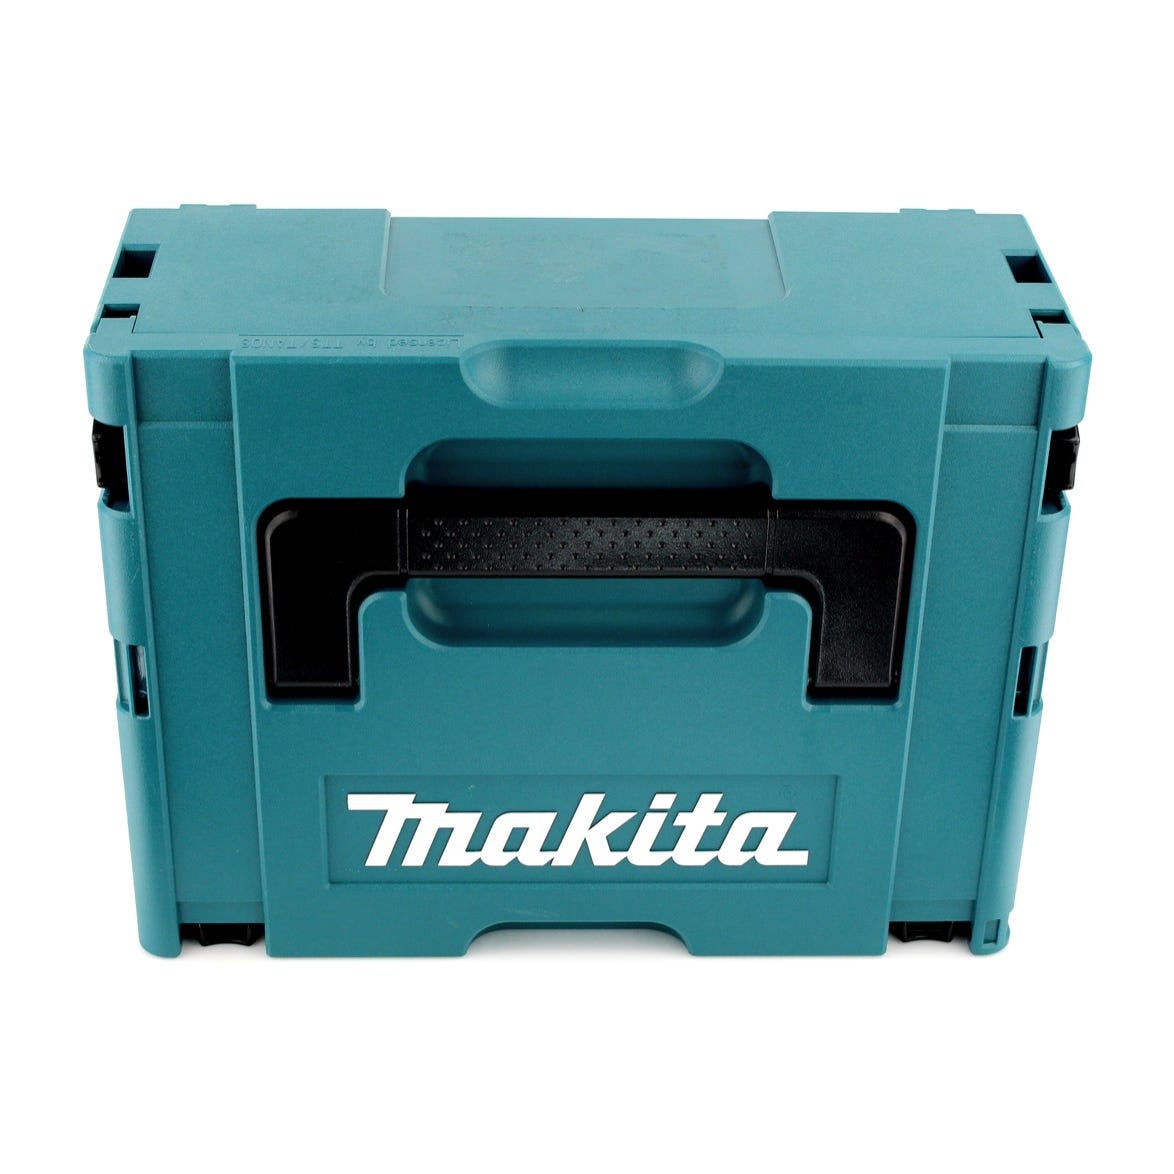 Makita DTD 155 RM1J Visseuse à percussion sans fil 18 V Brushless + Coffret de transport MAKPAC + 1x Batterie BL1840 4,0 Ah + Chargeur DC 18 RC 2